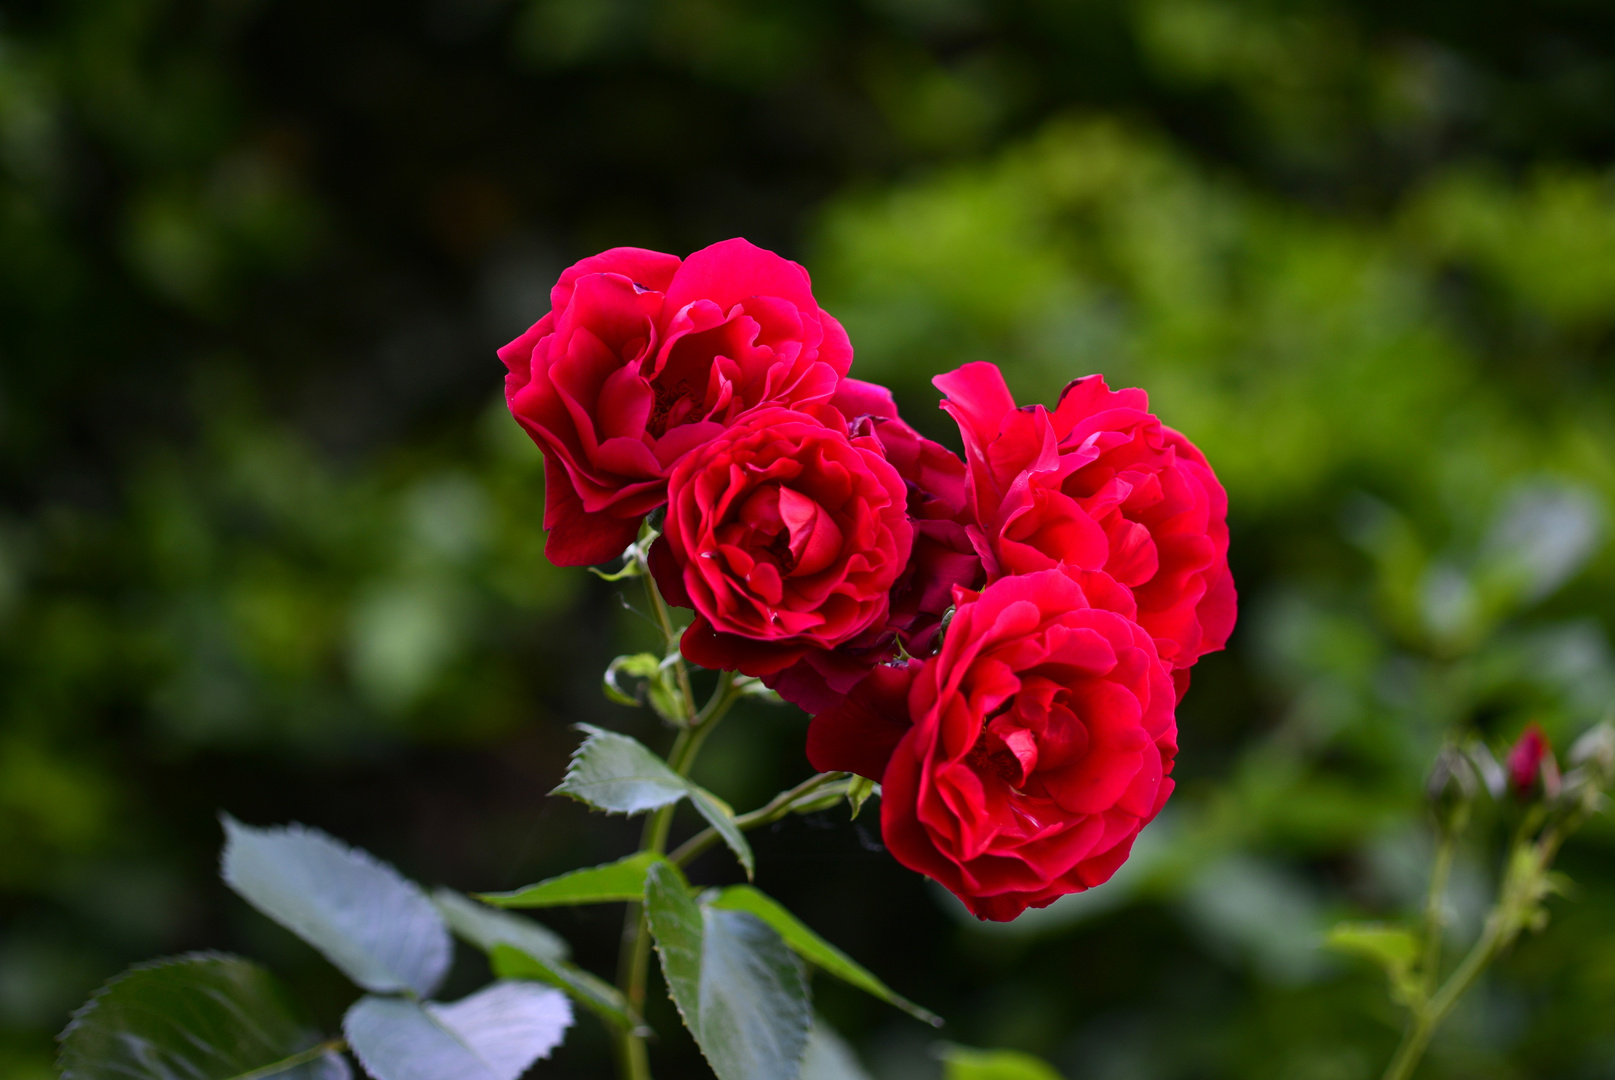 Rote Rosen, Wunderschön